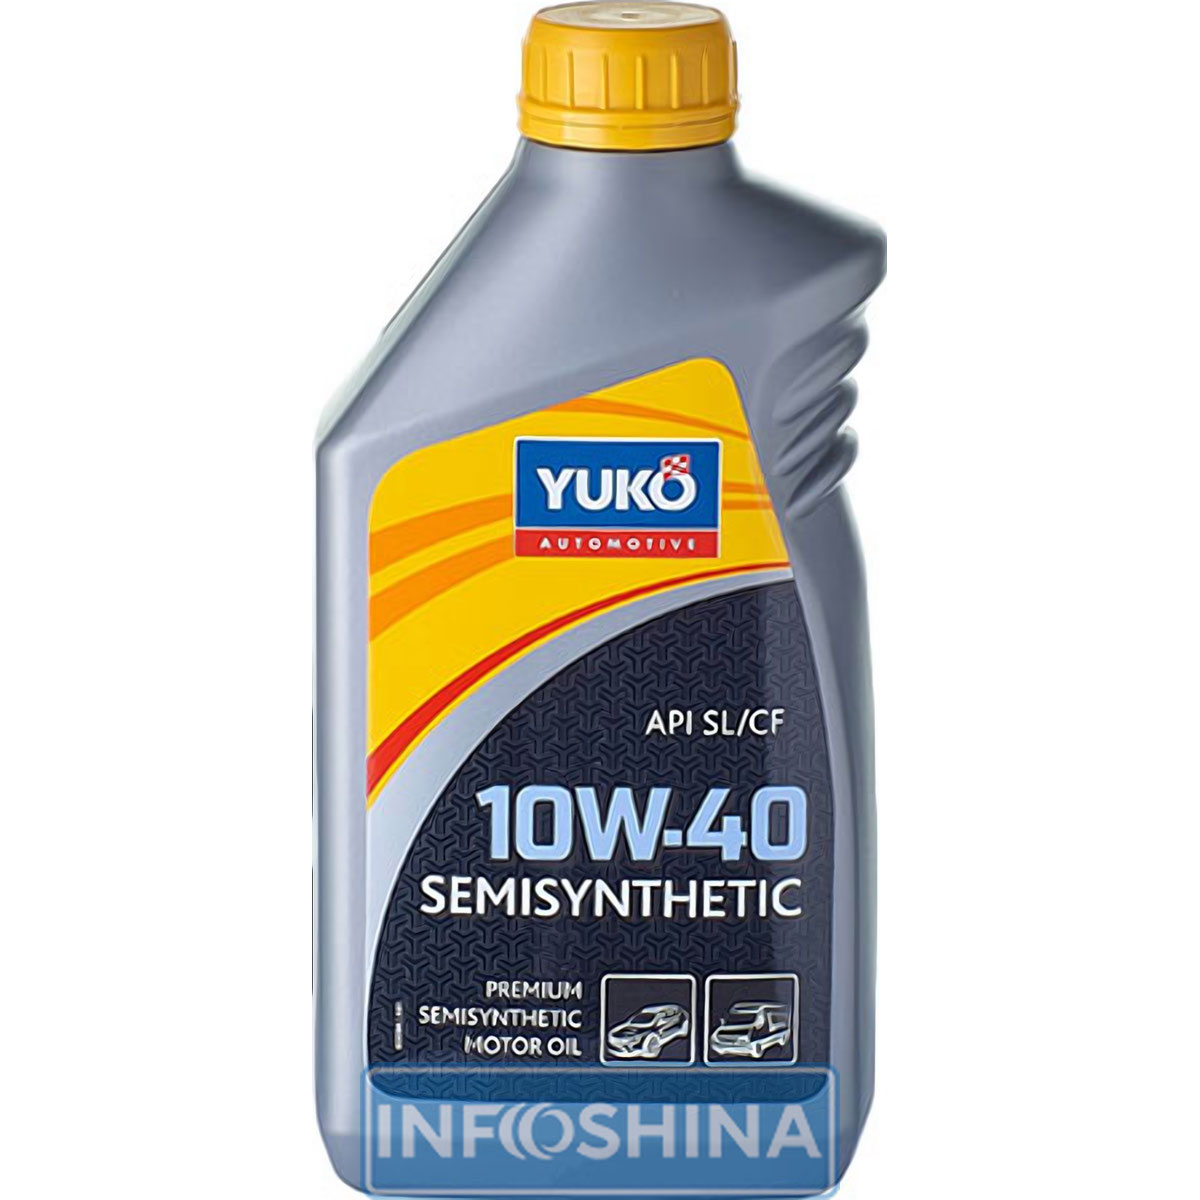 Купить масло Yuko Semisynthetic 10W-40 (1л)